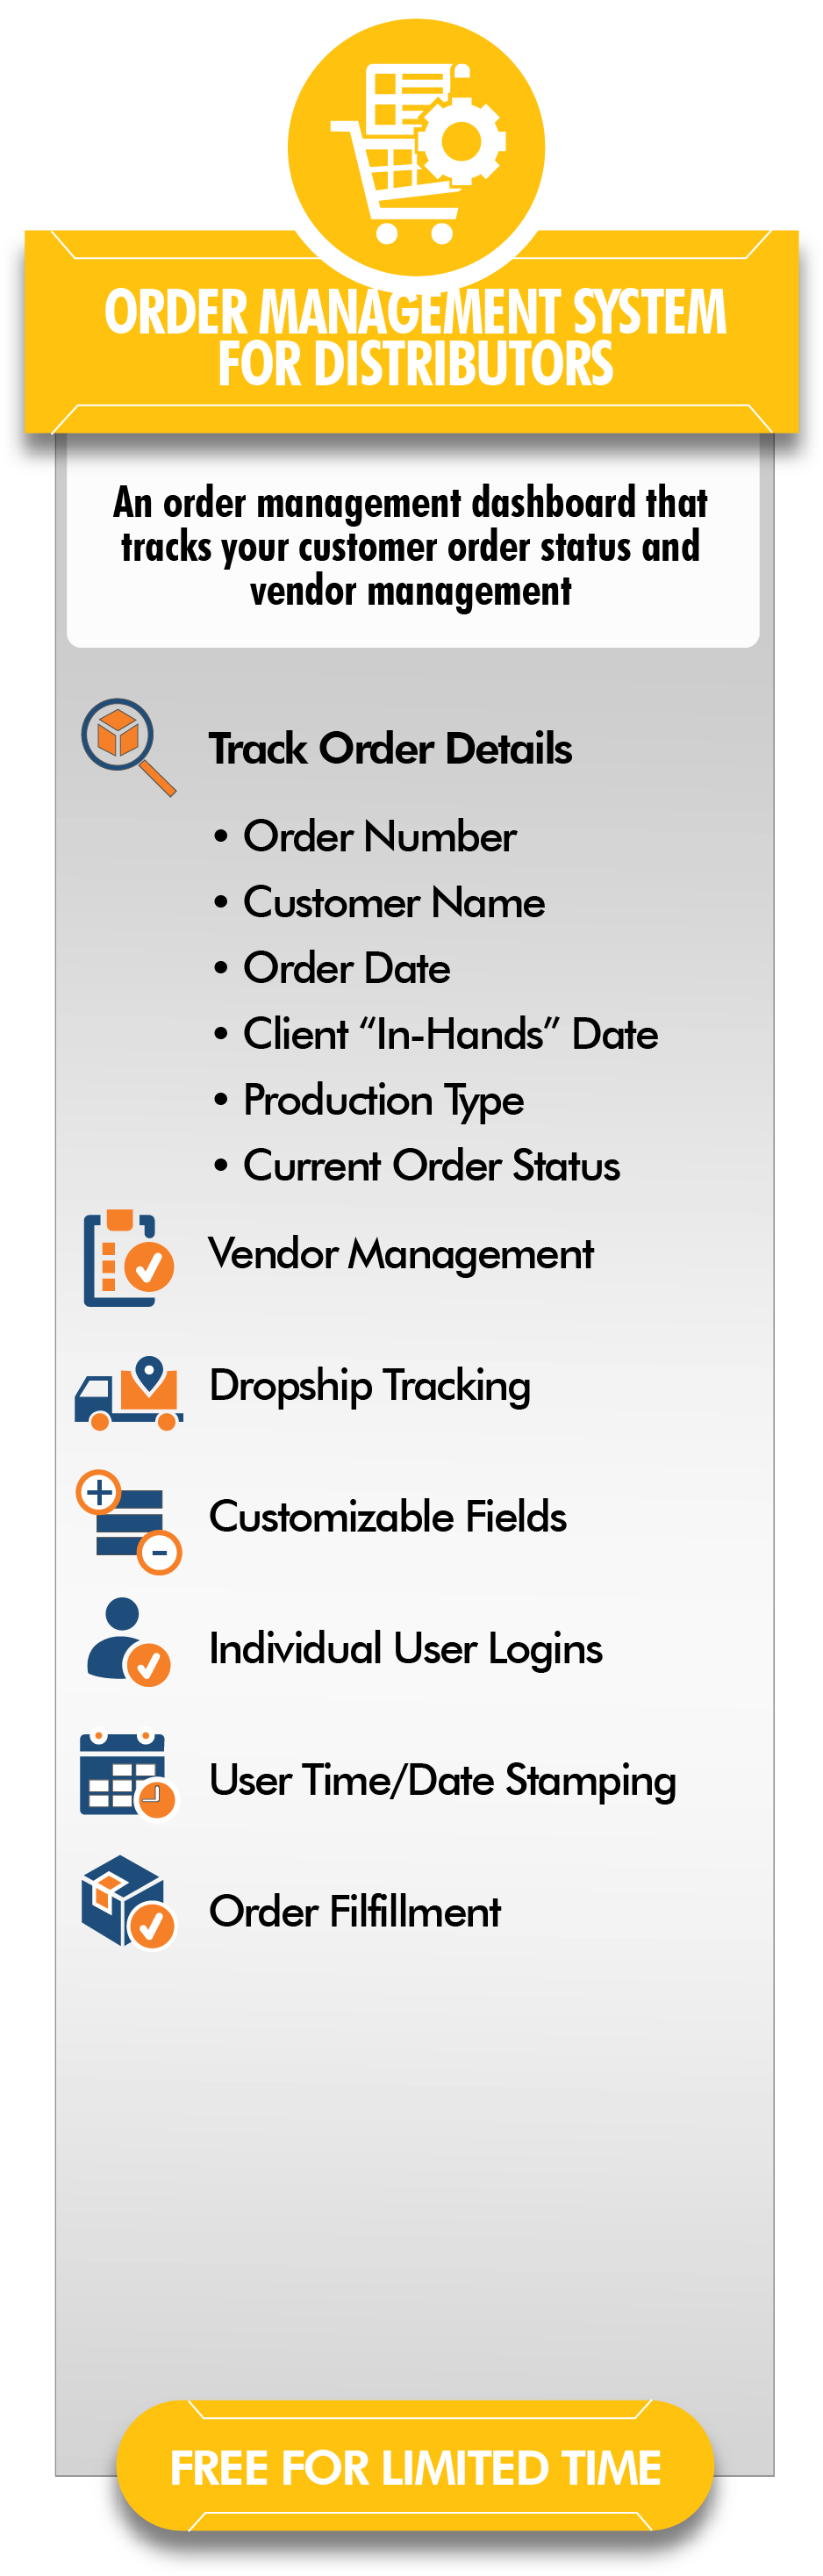 Order management System for Distributors